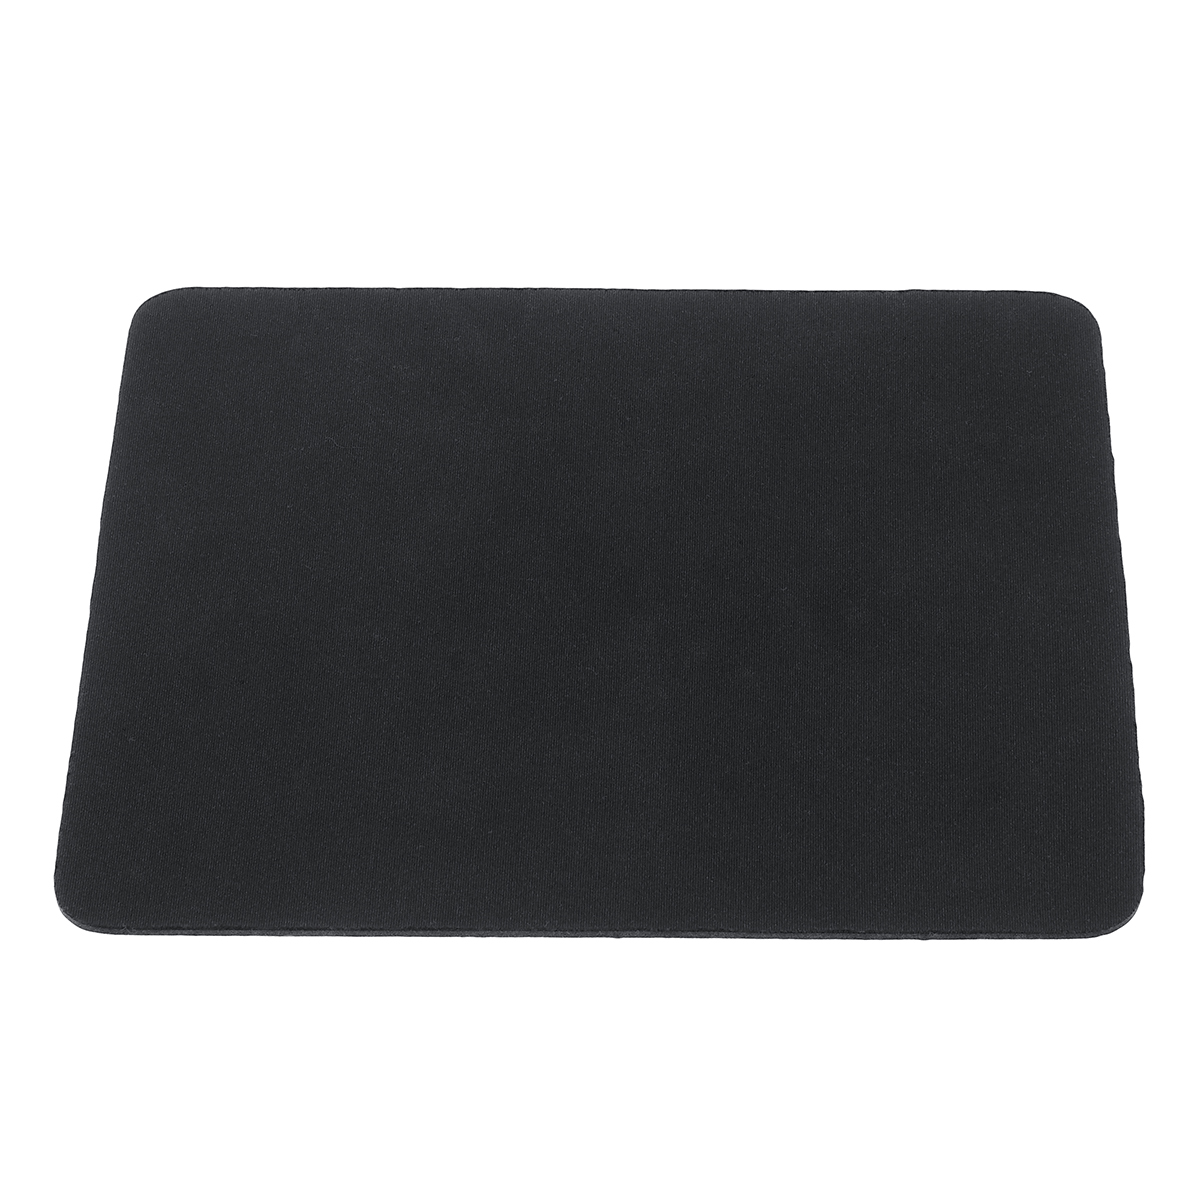 

Jumbo Size Solid Мышь черный коврик для игровой клавиатуры и Мышь